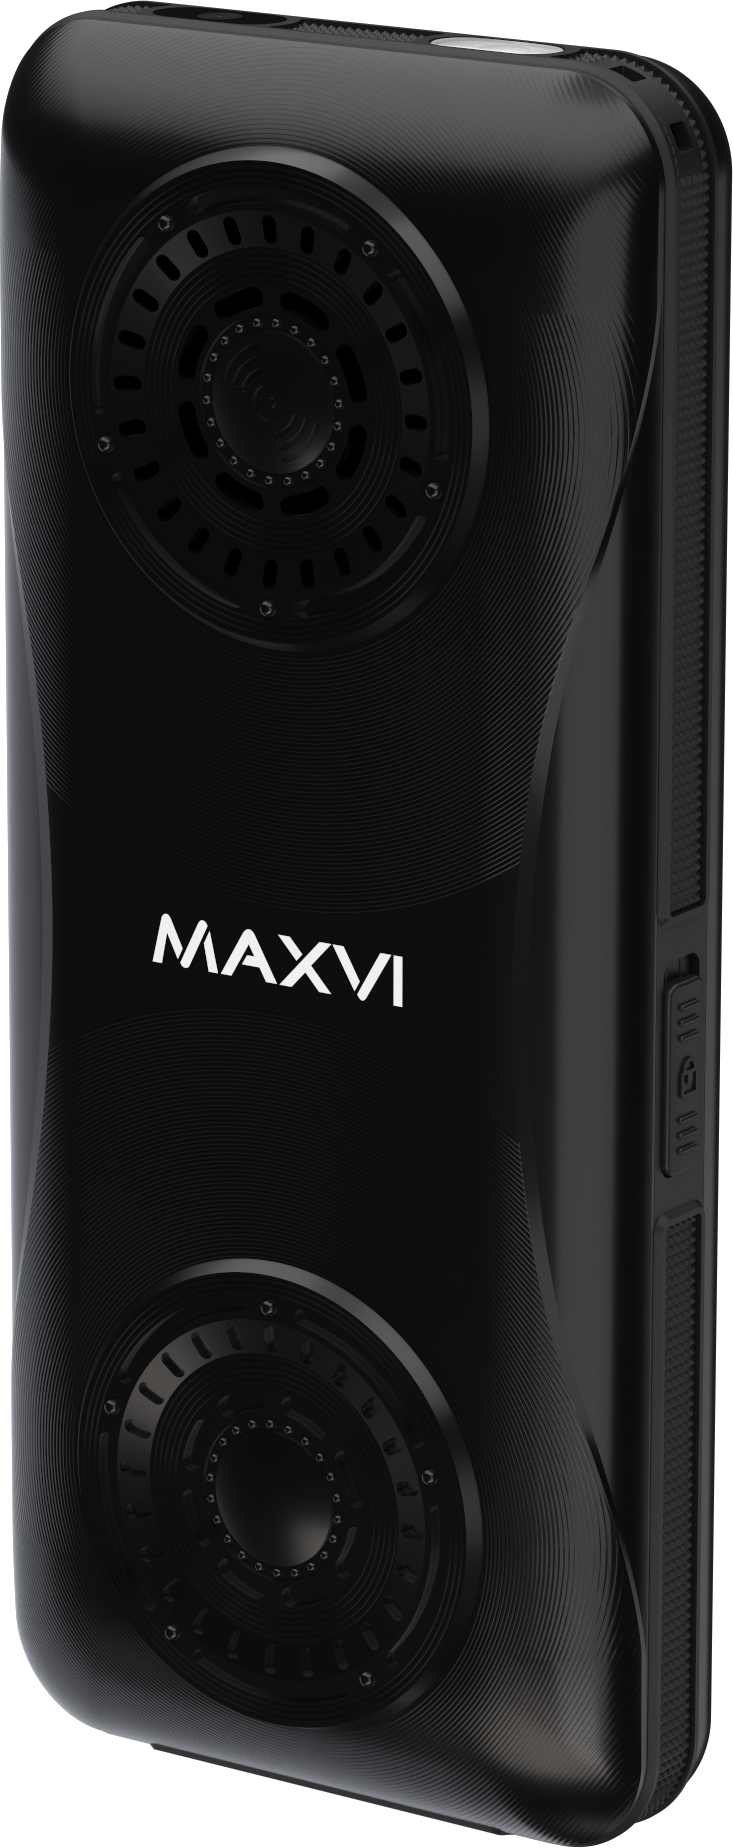 Мобильный телефон Maxvi P110 черного цвета